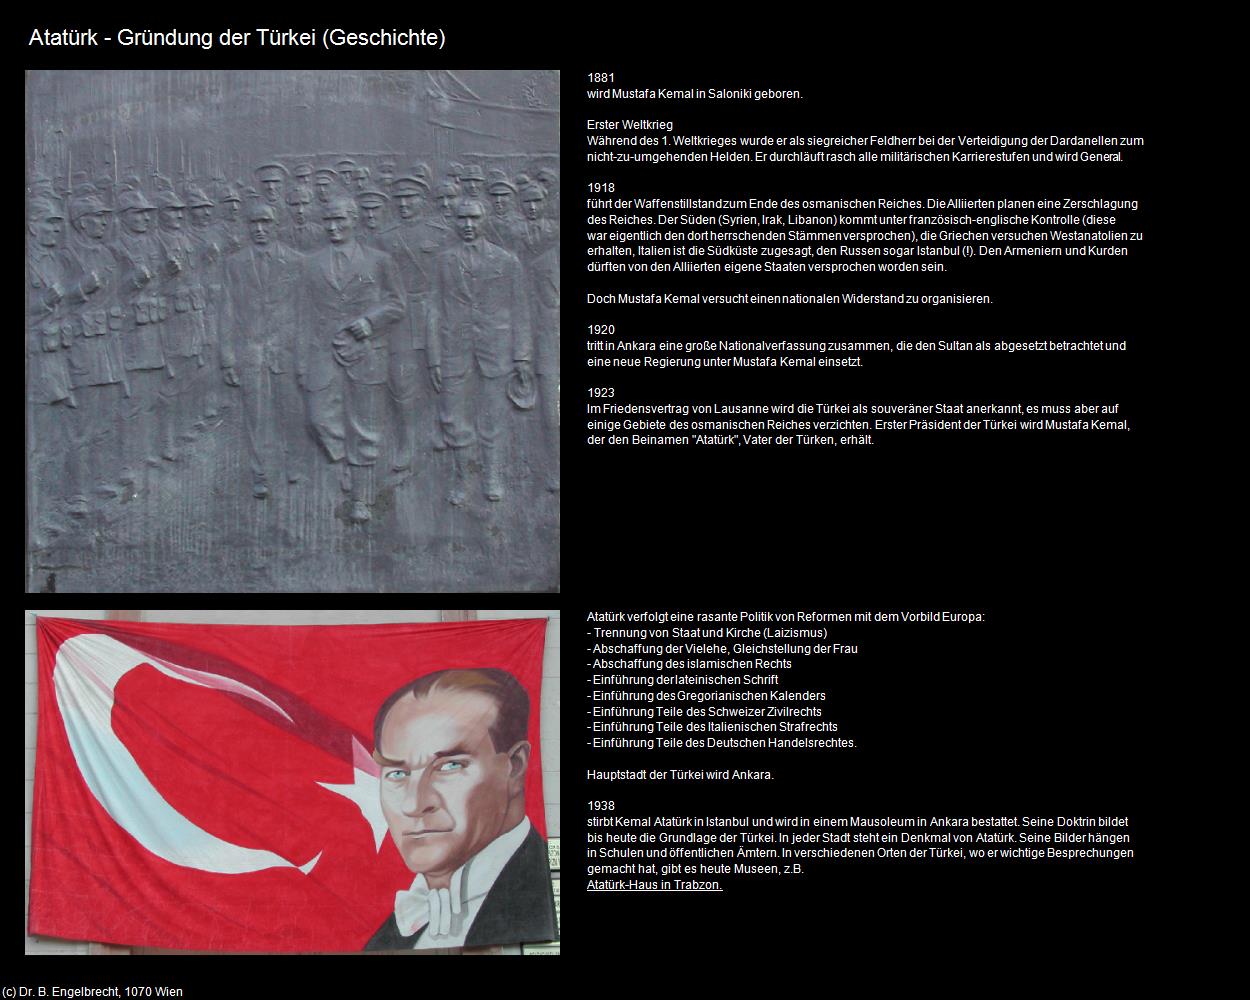 Atatürk - Gründung der Türkei      (Türkei-Geschichte) in TÜRKEI(c)B.Engelbrecht